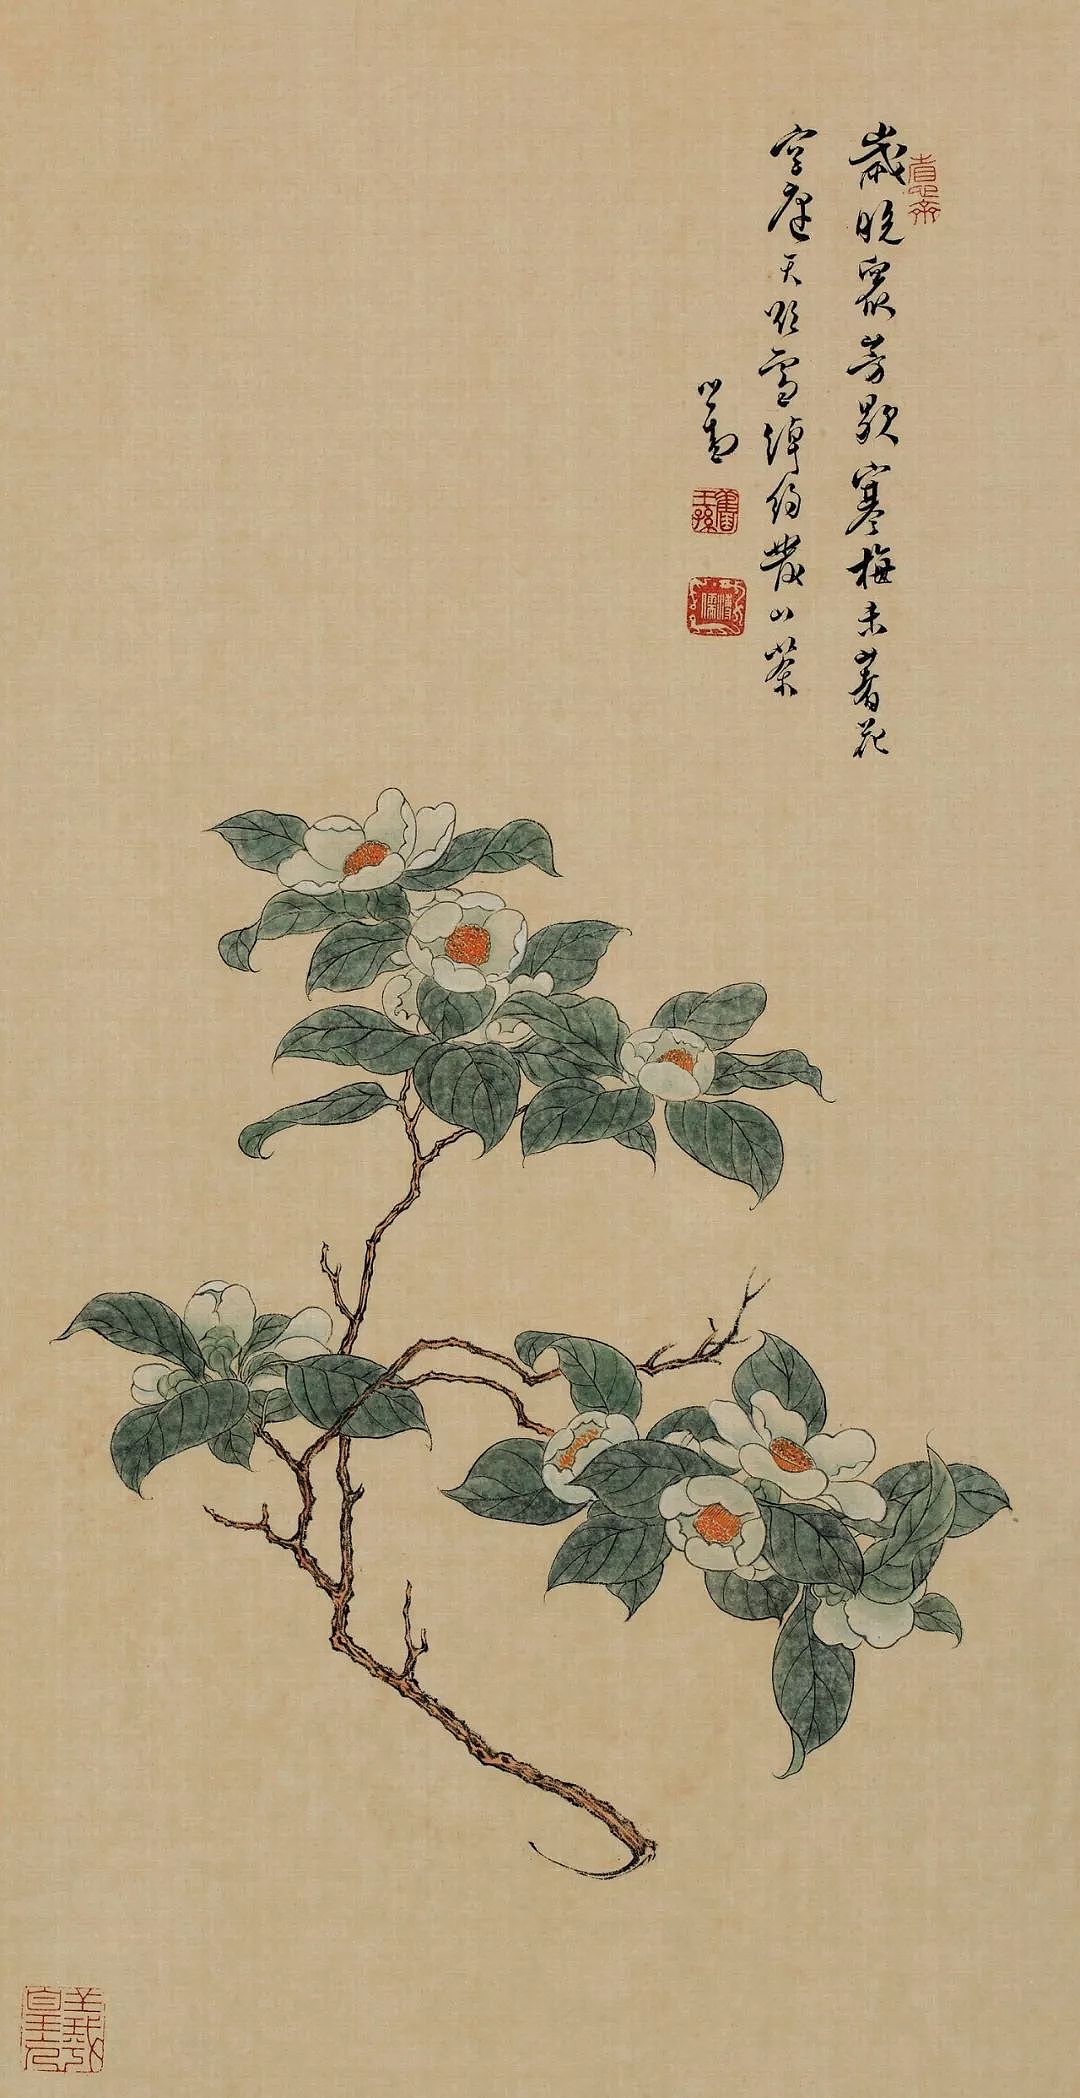 典藏版艺术电子刊首发，中国绘画12种颜色领略极致东方之美 - 37